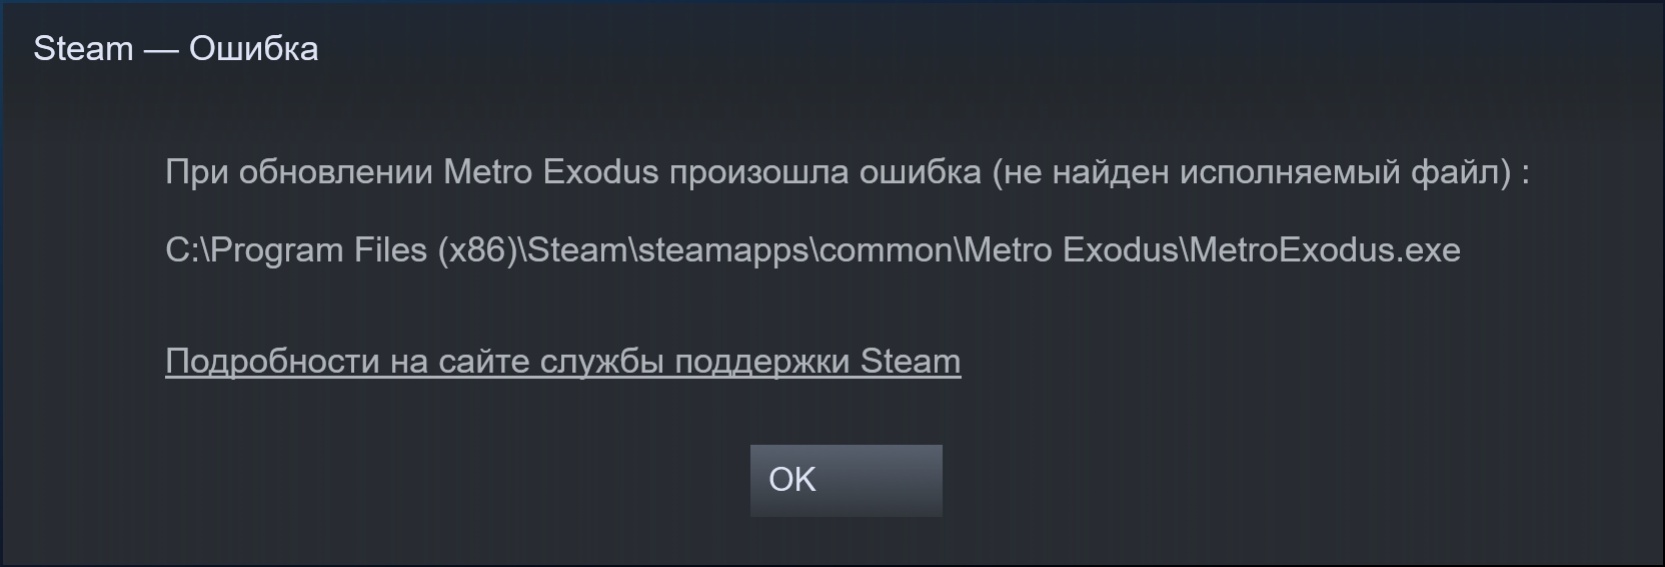 Простите произошла ошибка. Ошибка обновления Steam. При обновлении произошла ошибка не найден исполняемый файл. Ошибка при запуске метро Exodus. Ошибка при загрузке файла.